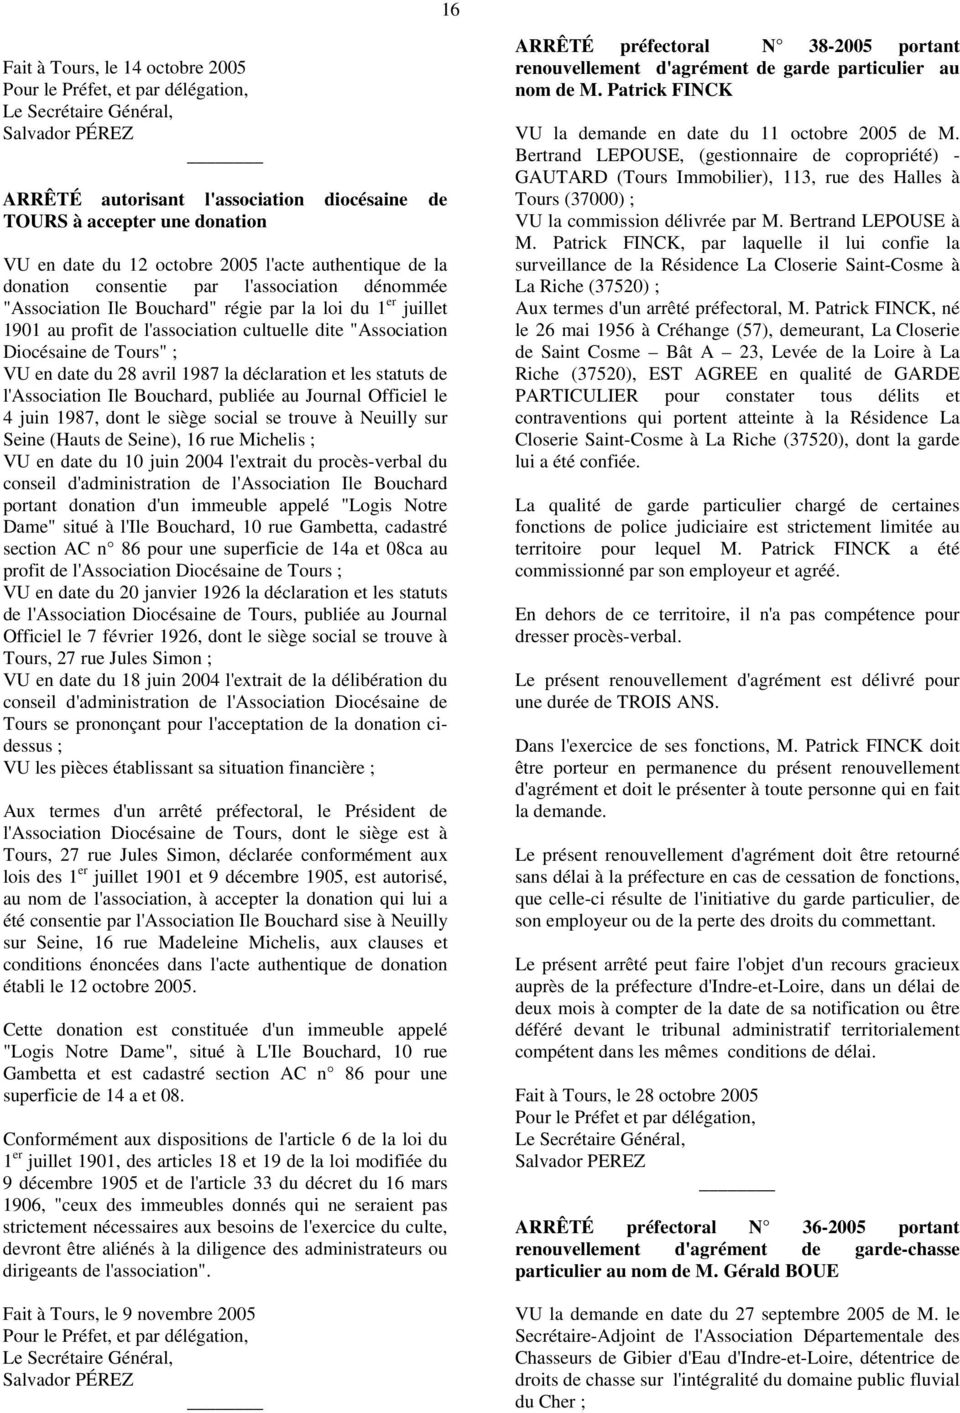 "Association Diocésaine de Tours" ; VU en date du 28 avril 1987 la déclaration et les statuts de l'association Ile Bouchard, publiée au Journal Officiel le 4 juin 1987, dont le siège social se trouve